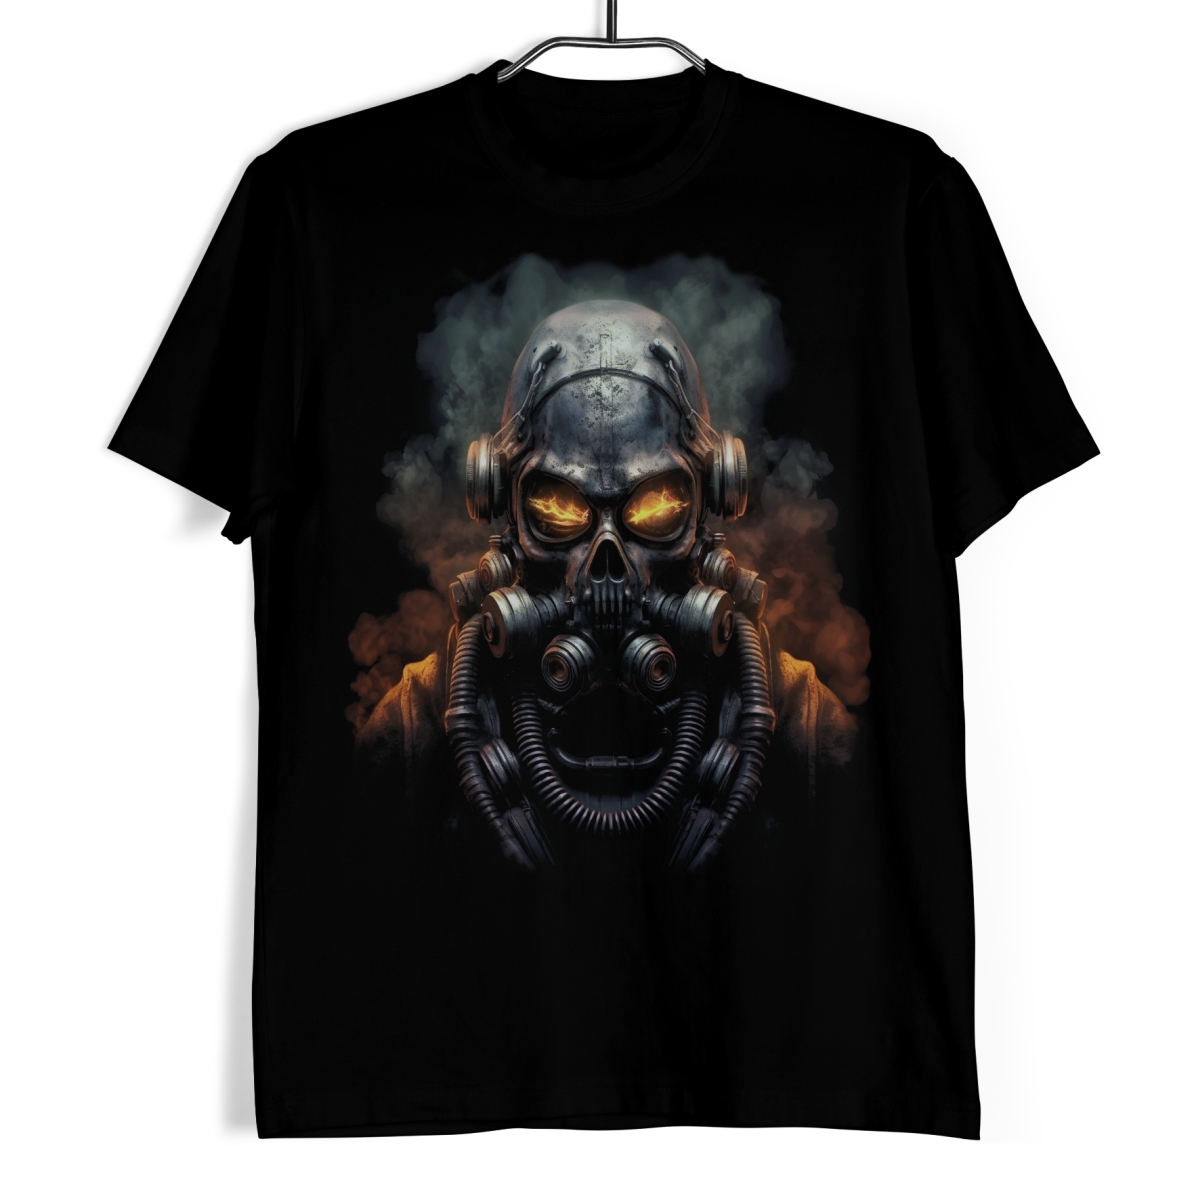 Tričko s lebkou - FuturaSkull Echo 3XL